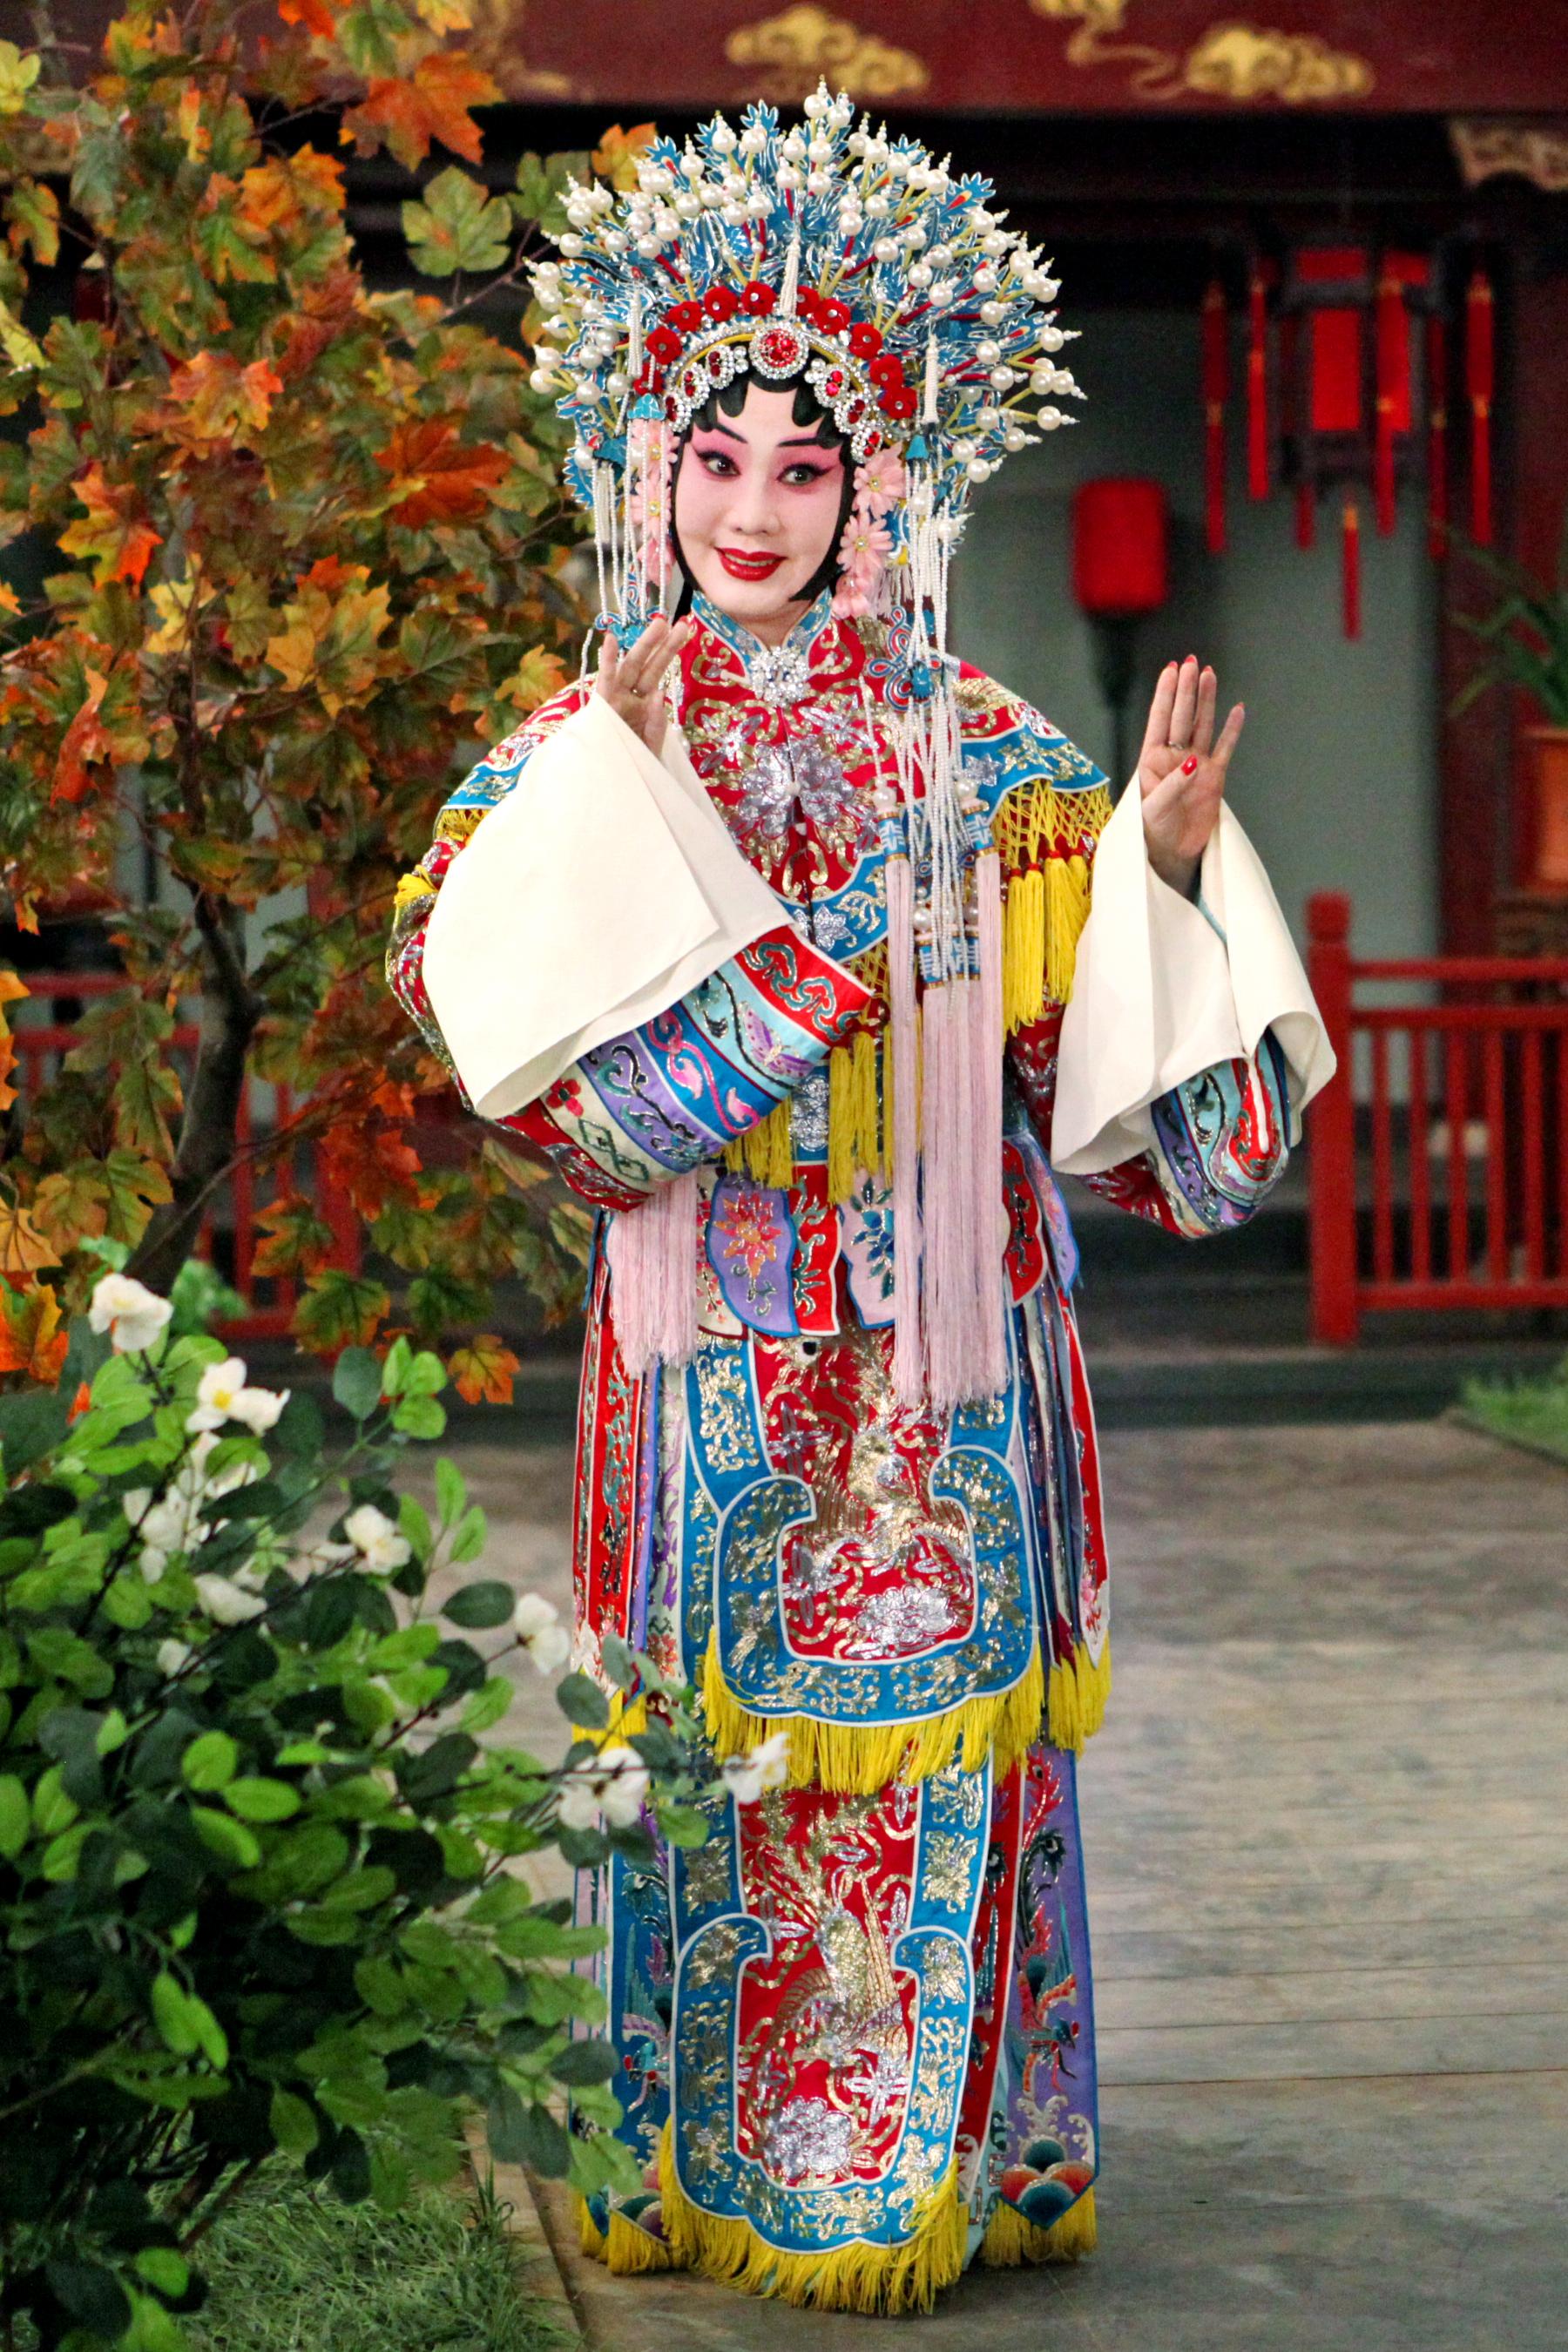 康乐及文化事务署邀得北京京剧院六月中旬来港，献演三场京剧艺术大师张君秋的青衣流派经典剧目作为今年中国戏曲节的开幕节目。图为《状元媒》剧照。